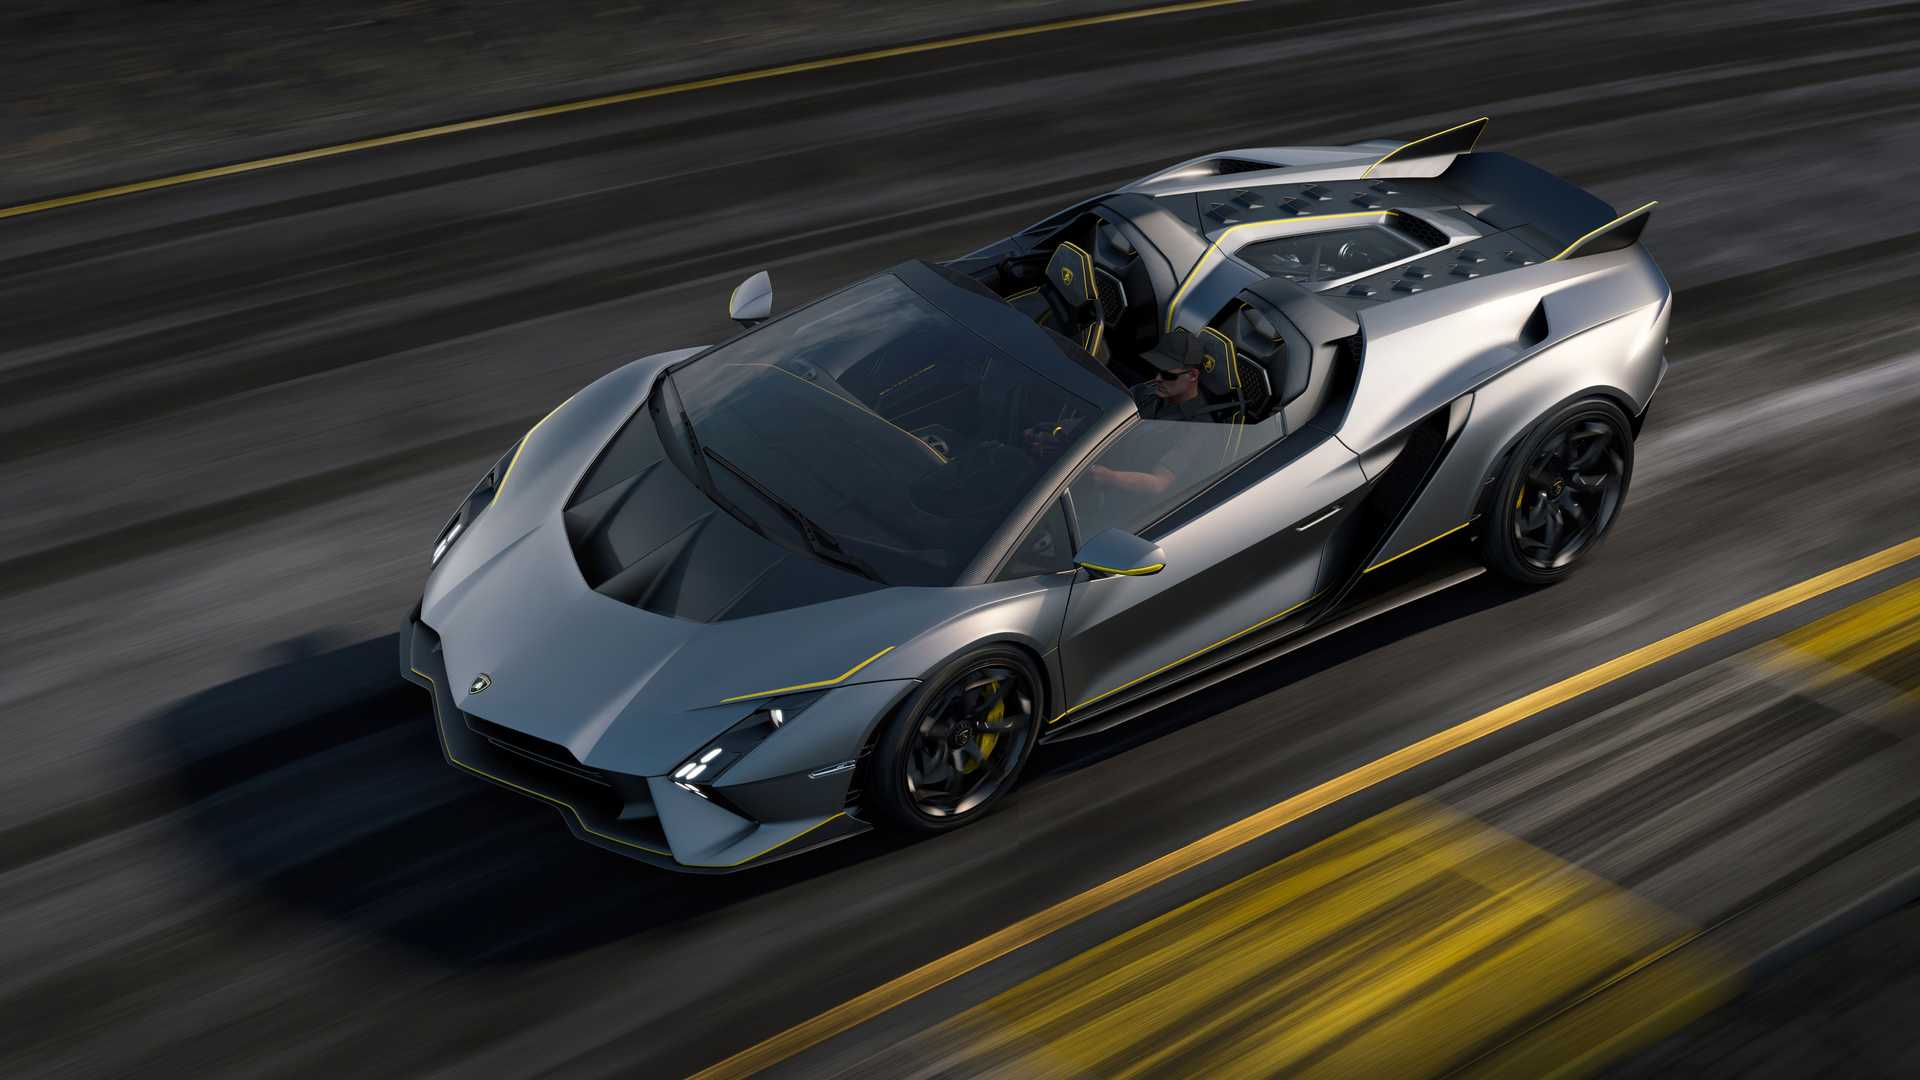 Lamborghini ra mắt bộ đôi siêu xe V12 chạy xăng cuối cùng, sau đây sẽ toàn siêu xe điện êm ru chưa biết nẹt pô kiểu gì - Ảnh 11.